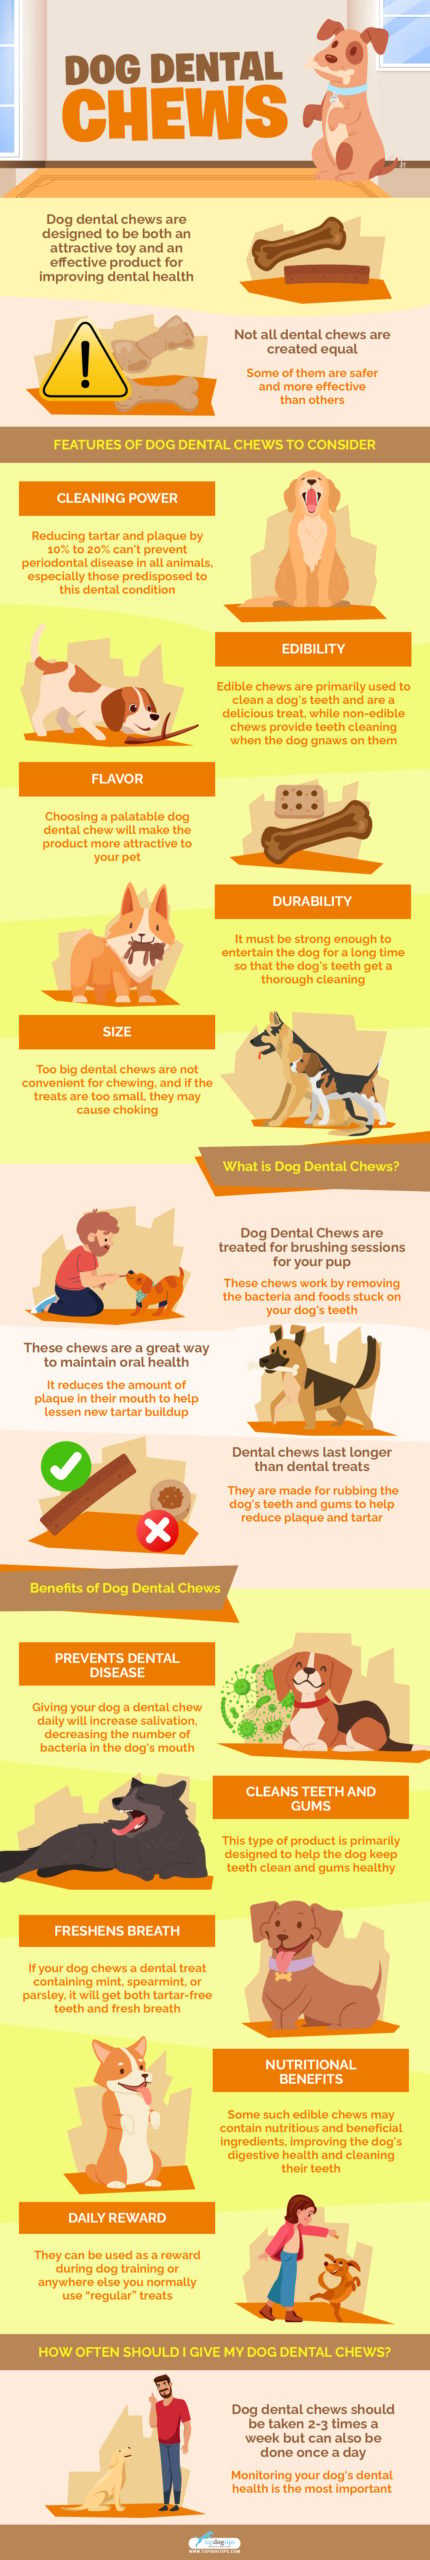 Dog Dental Chews